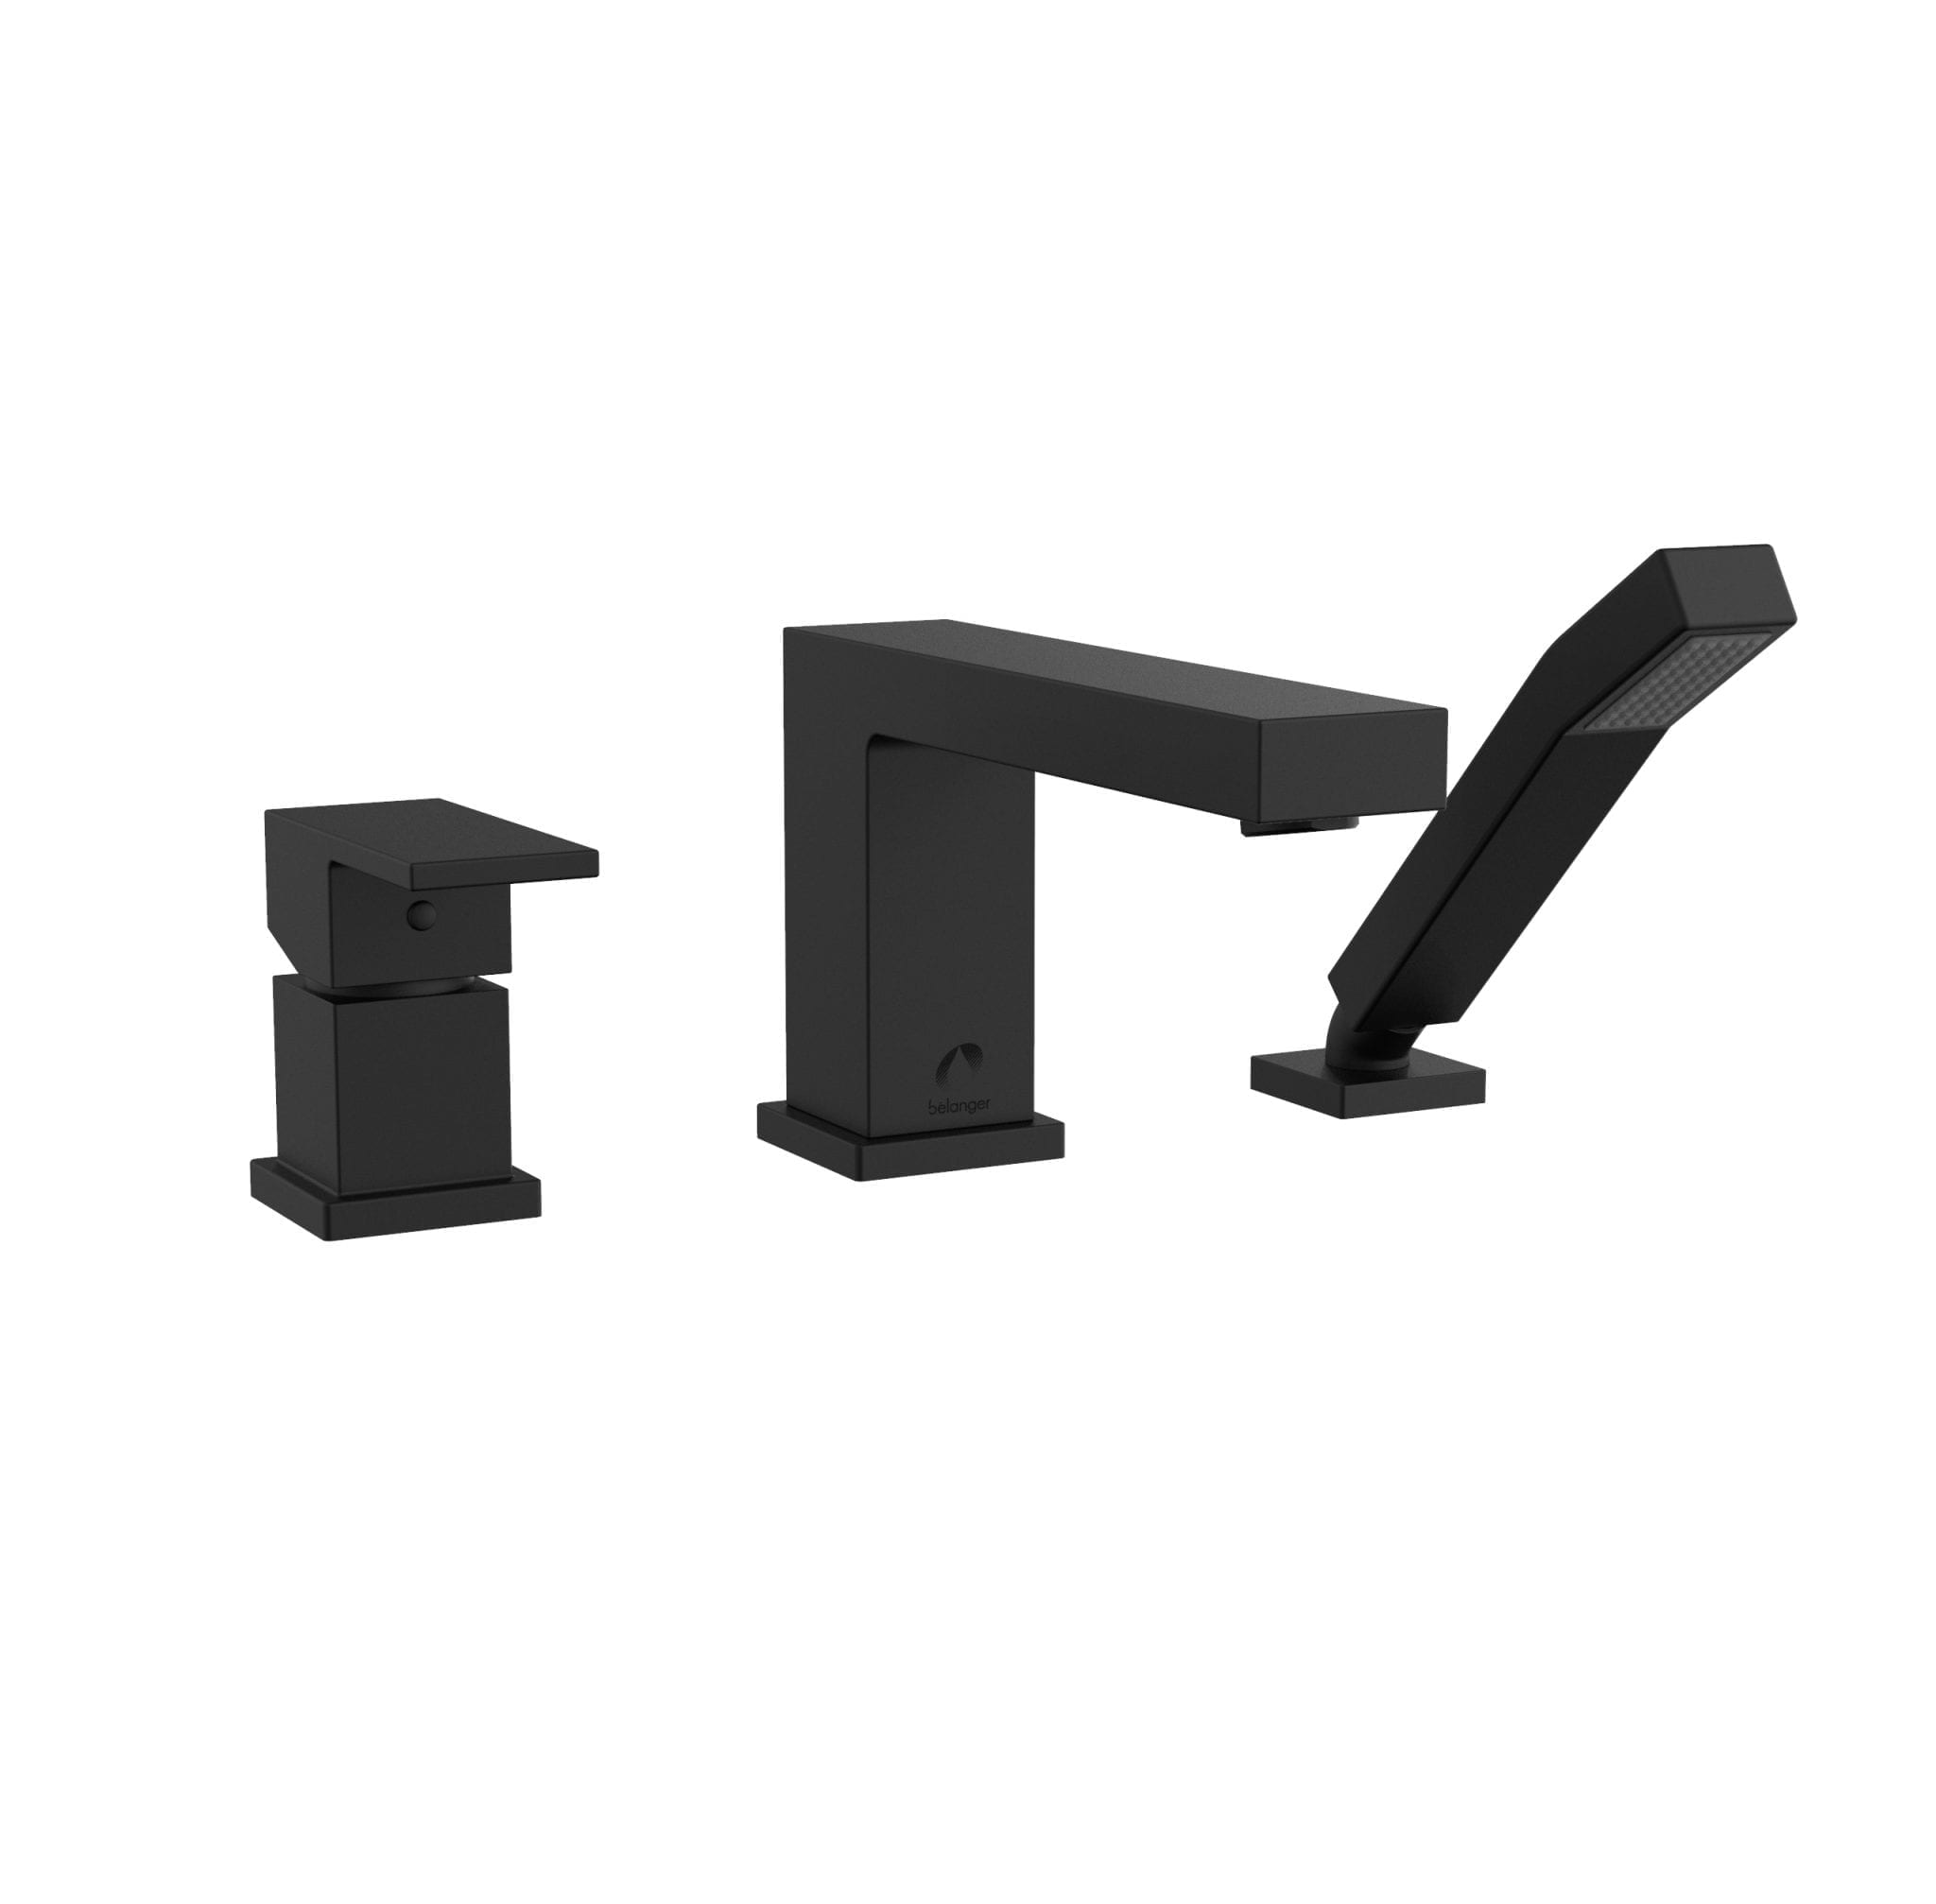 Belanger Quadrato Black Matte 1-handle Deck-mount Roman Low-arc Bathtub Faucet with Hand Shower (Valve Included)